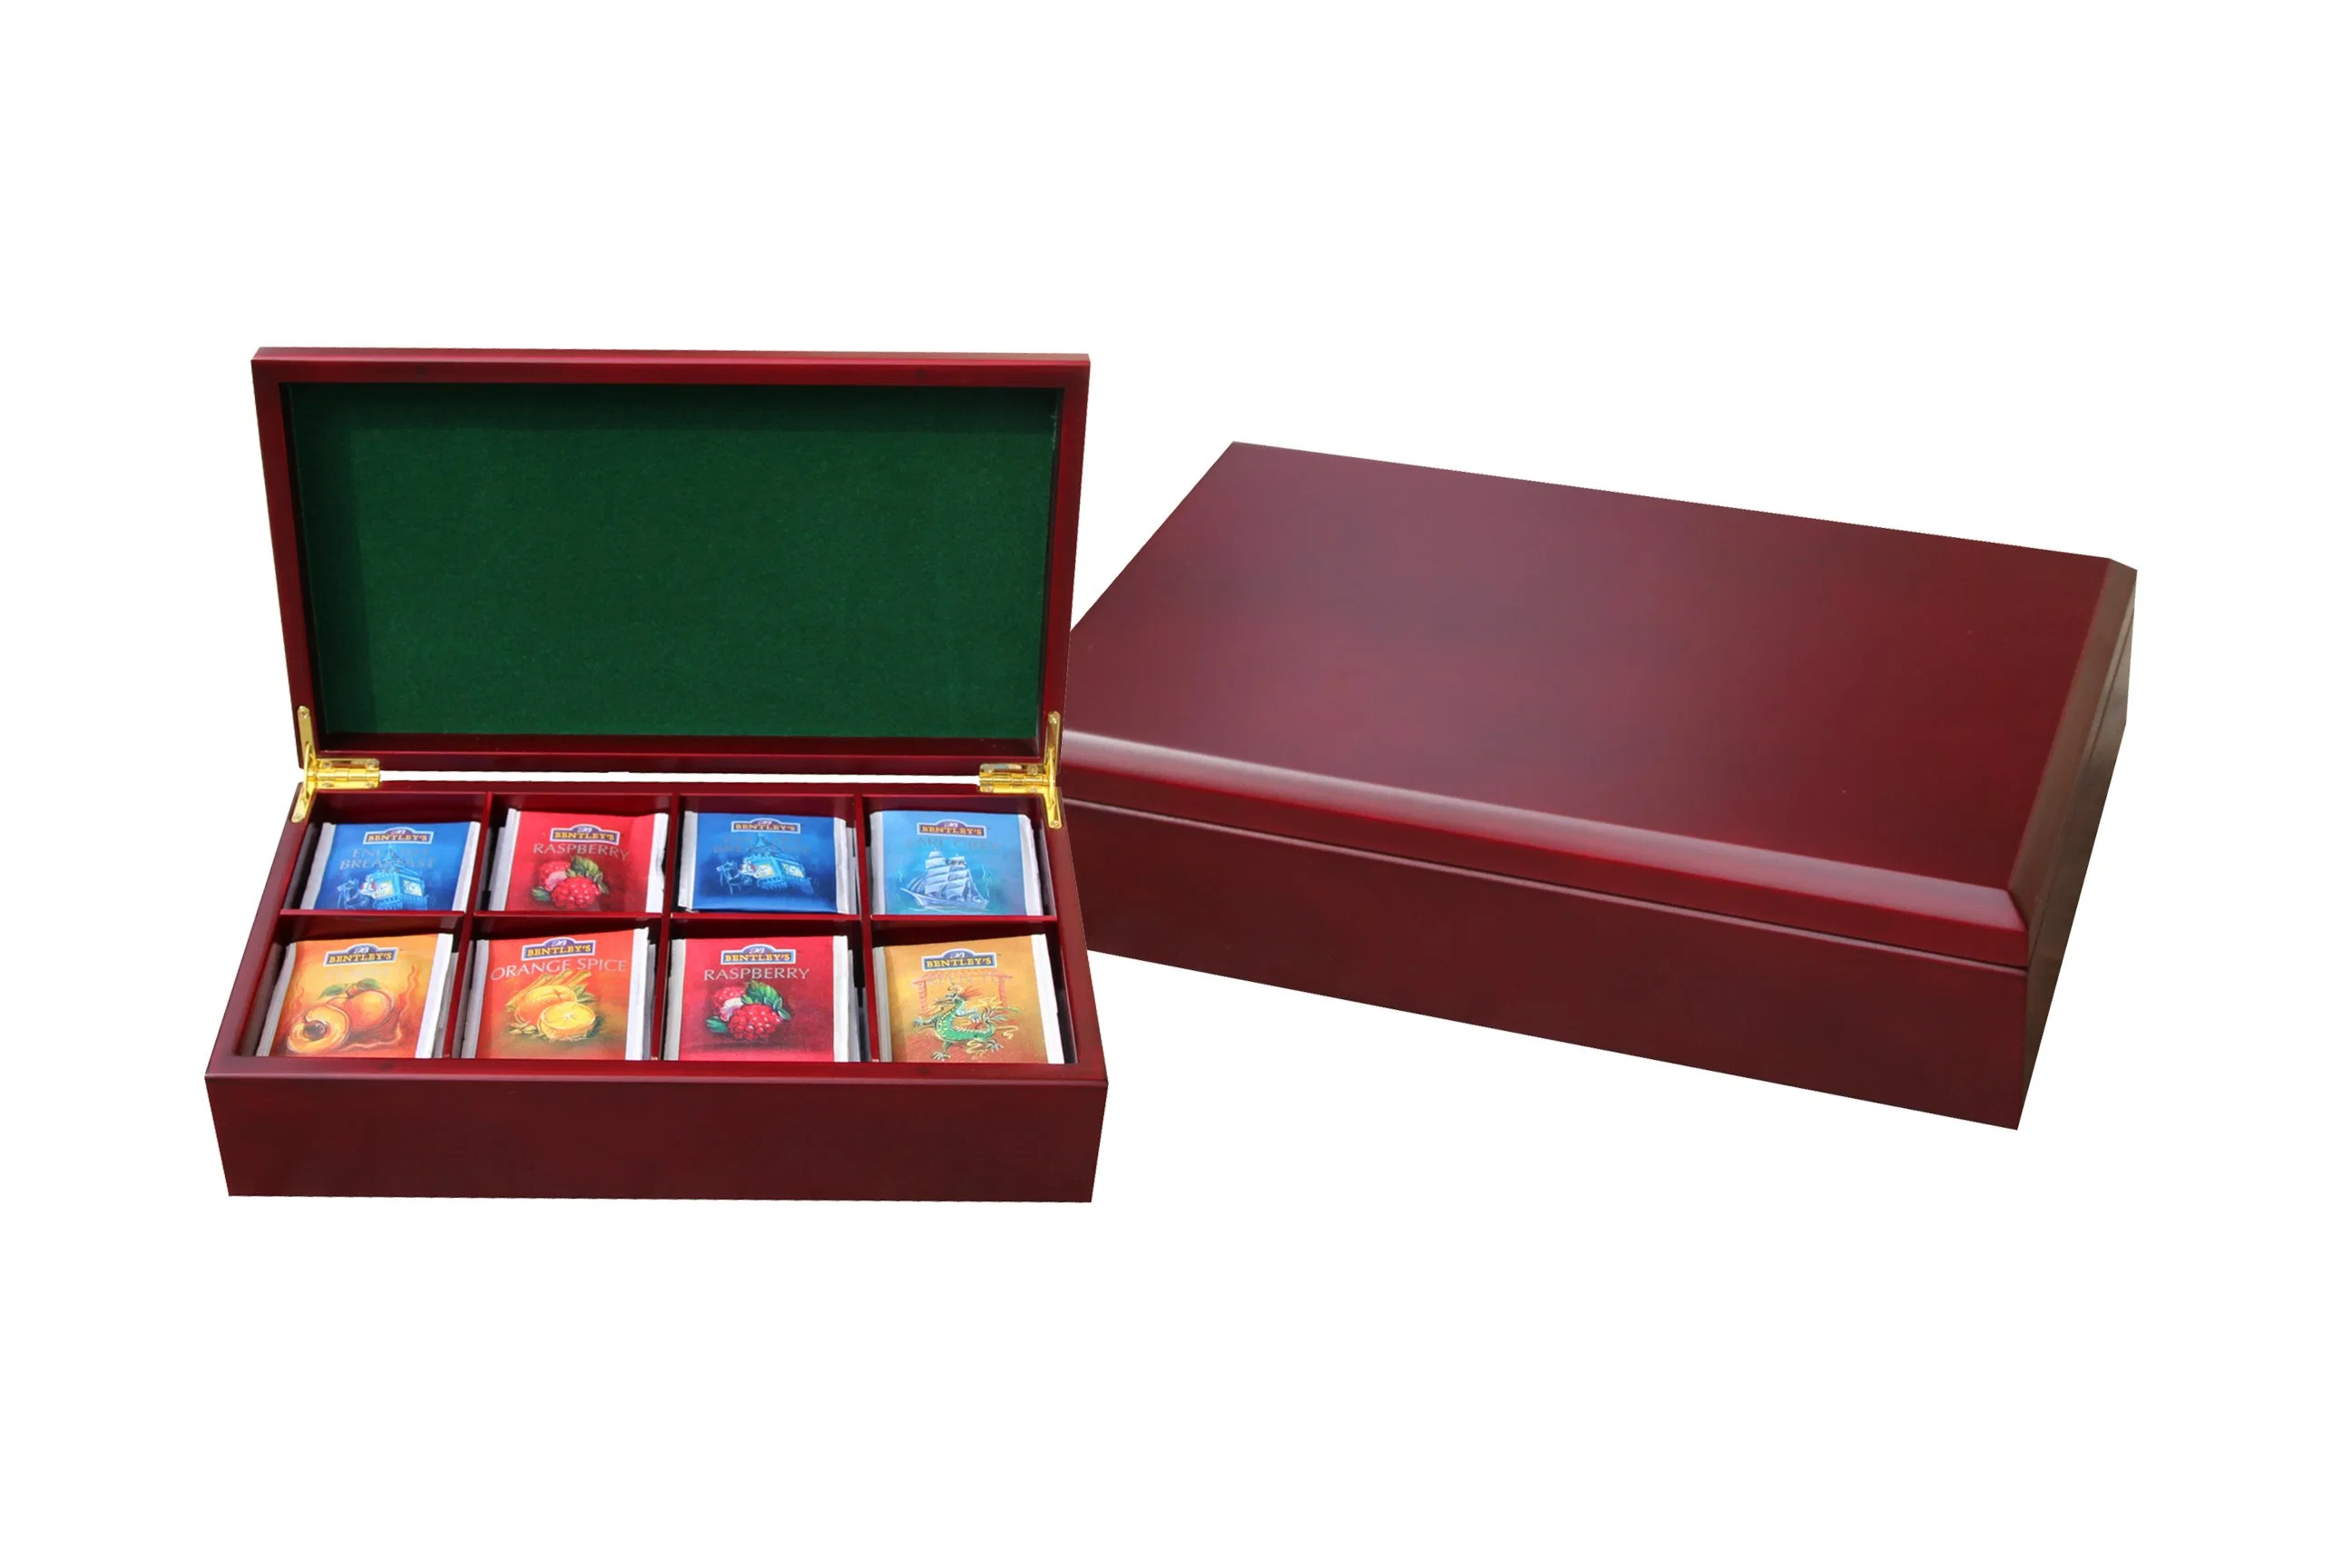 Handgefertigte Custom Made Rich Mahagoni Massivholz Fach Tee Geschenk Brust-Box und Teebeutel Aufbewahrungsboxen und Halter mit 8 Fach